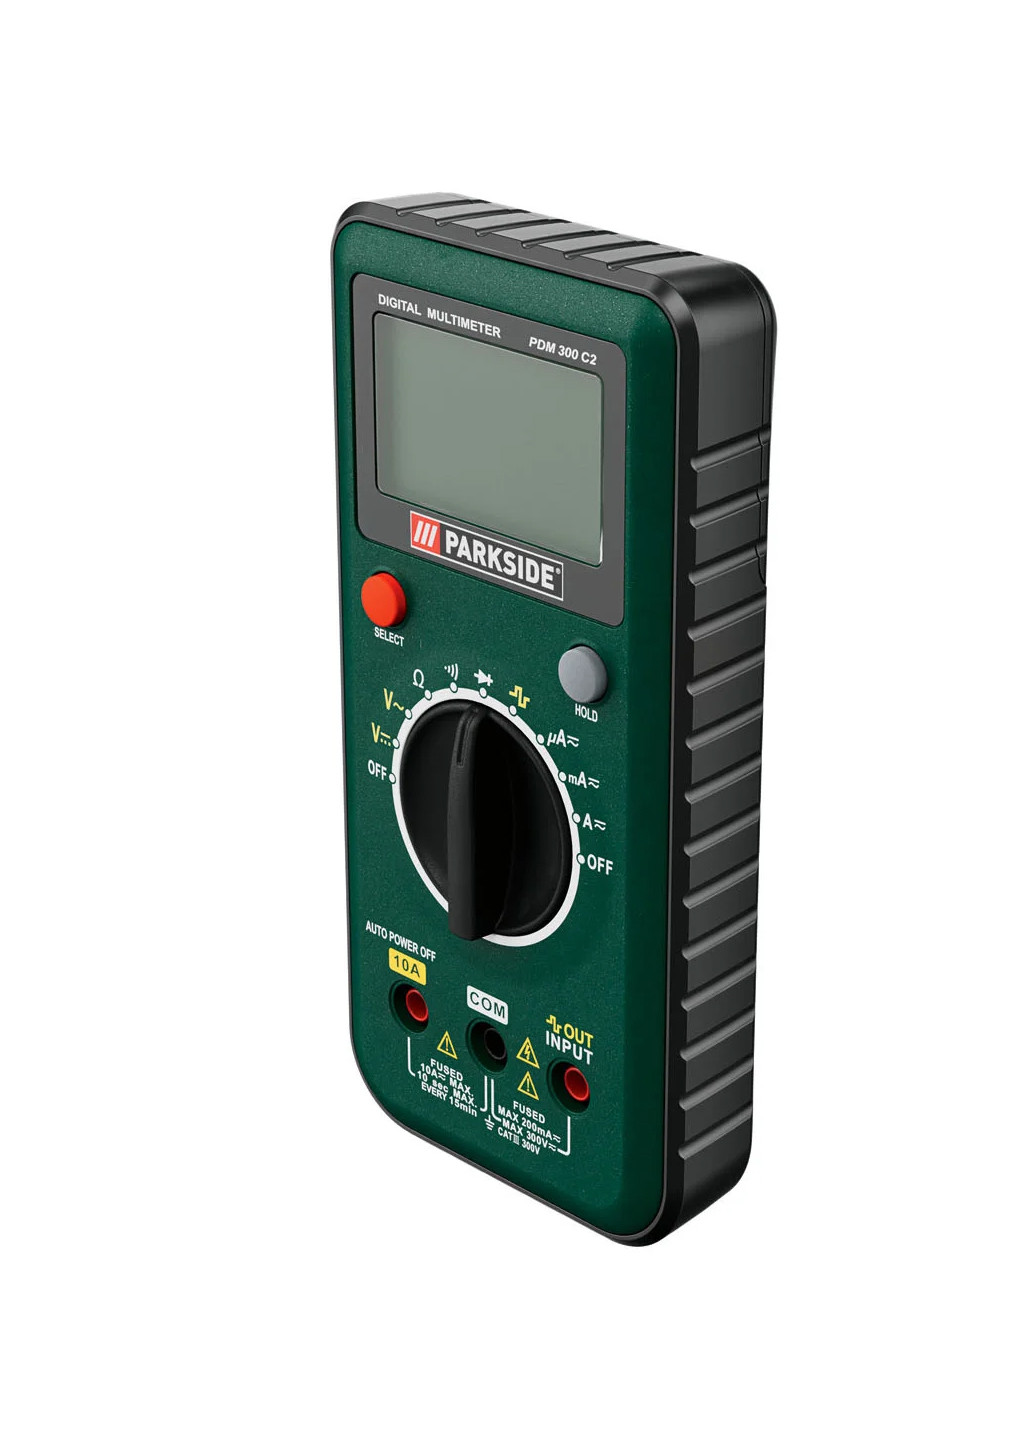 Цифровой мультиметр с автодиапазоном PDM 300 C2 зеленый Parkside (262007272)